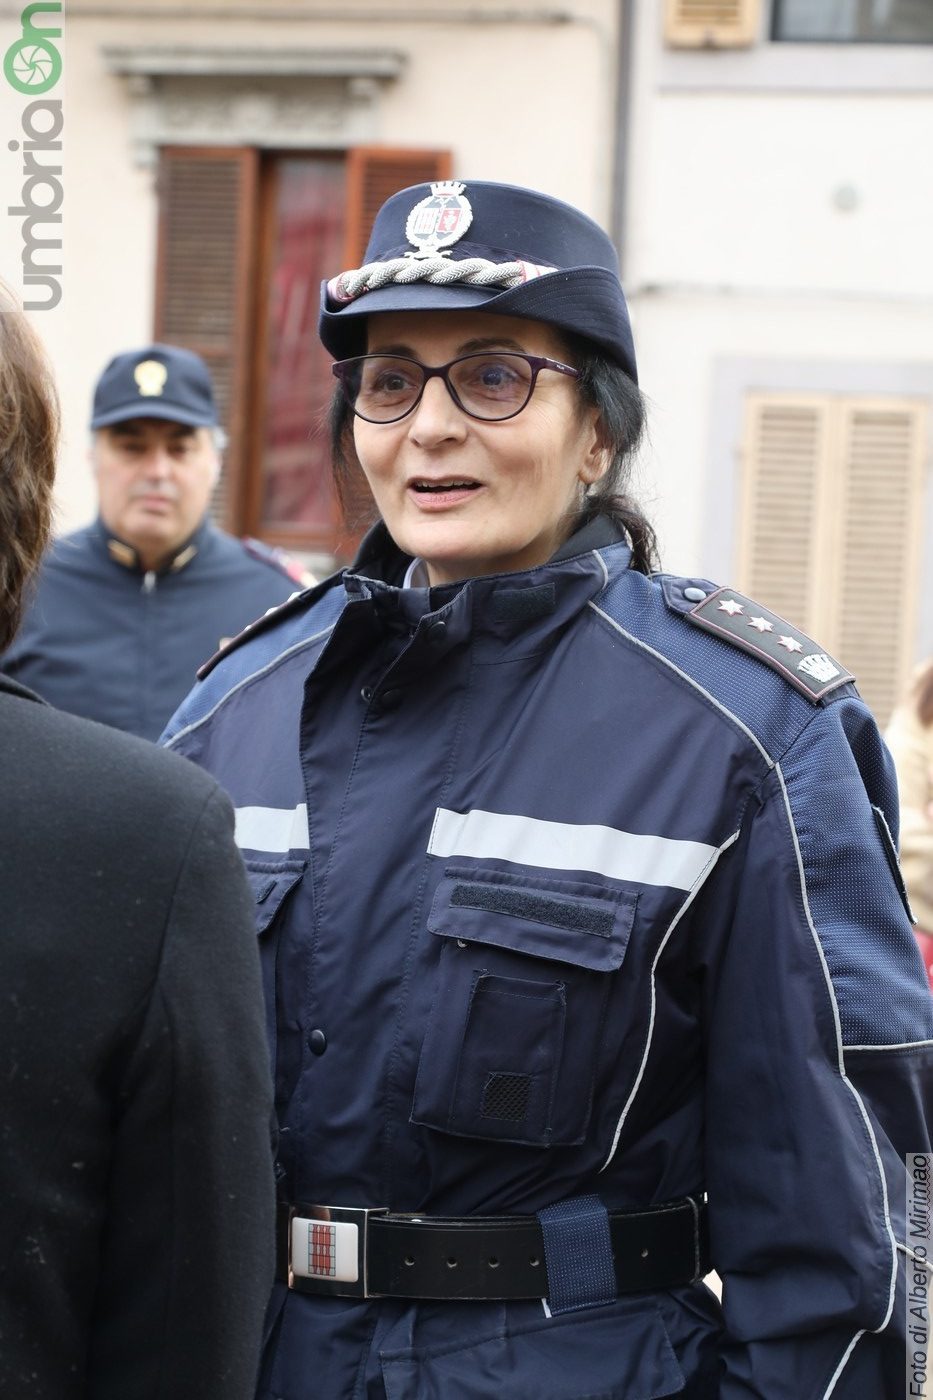 San-Sebastiano-Polizia-Locale-Terni-cerimonia-20-gennaio-2020-77-e1579523304202